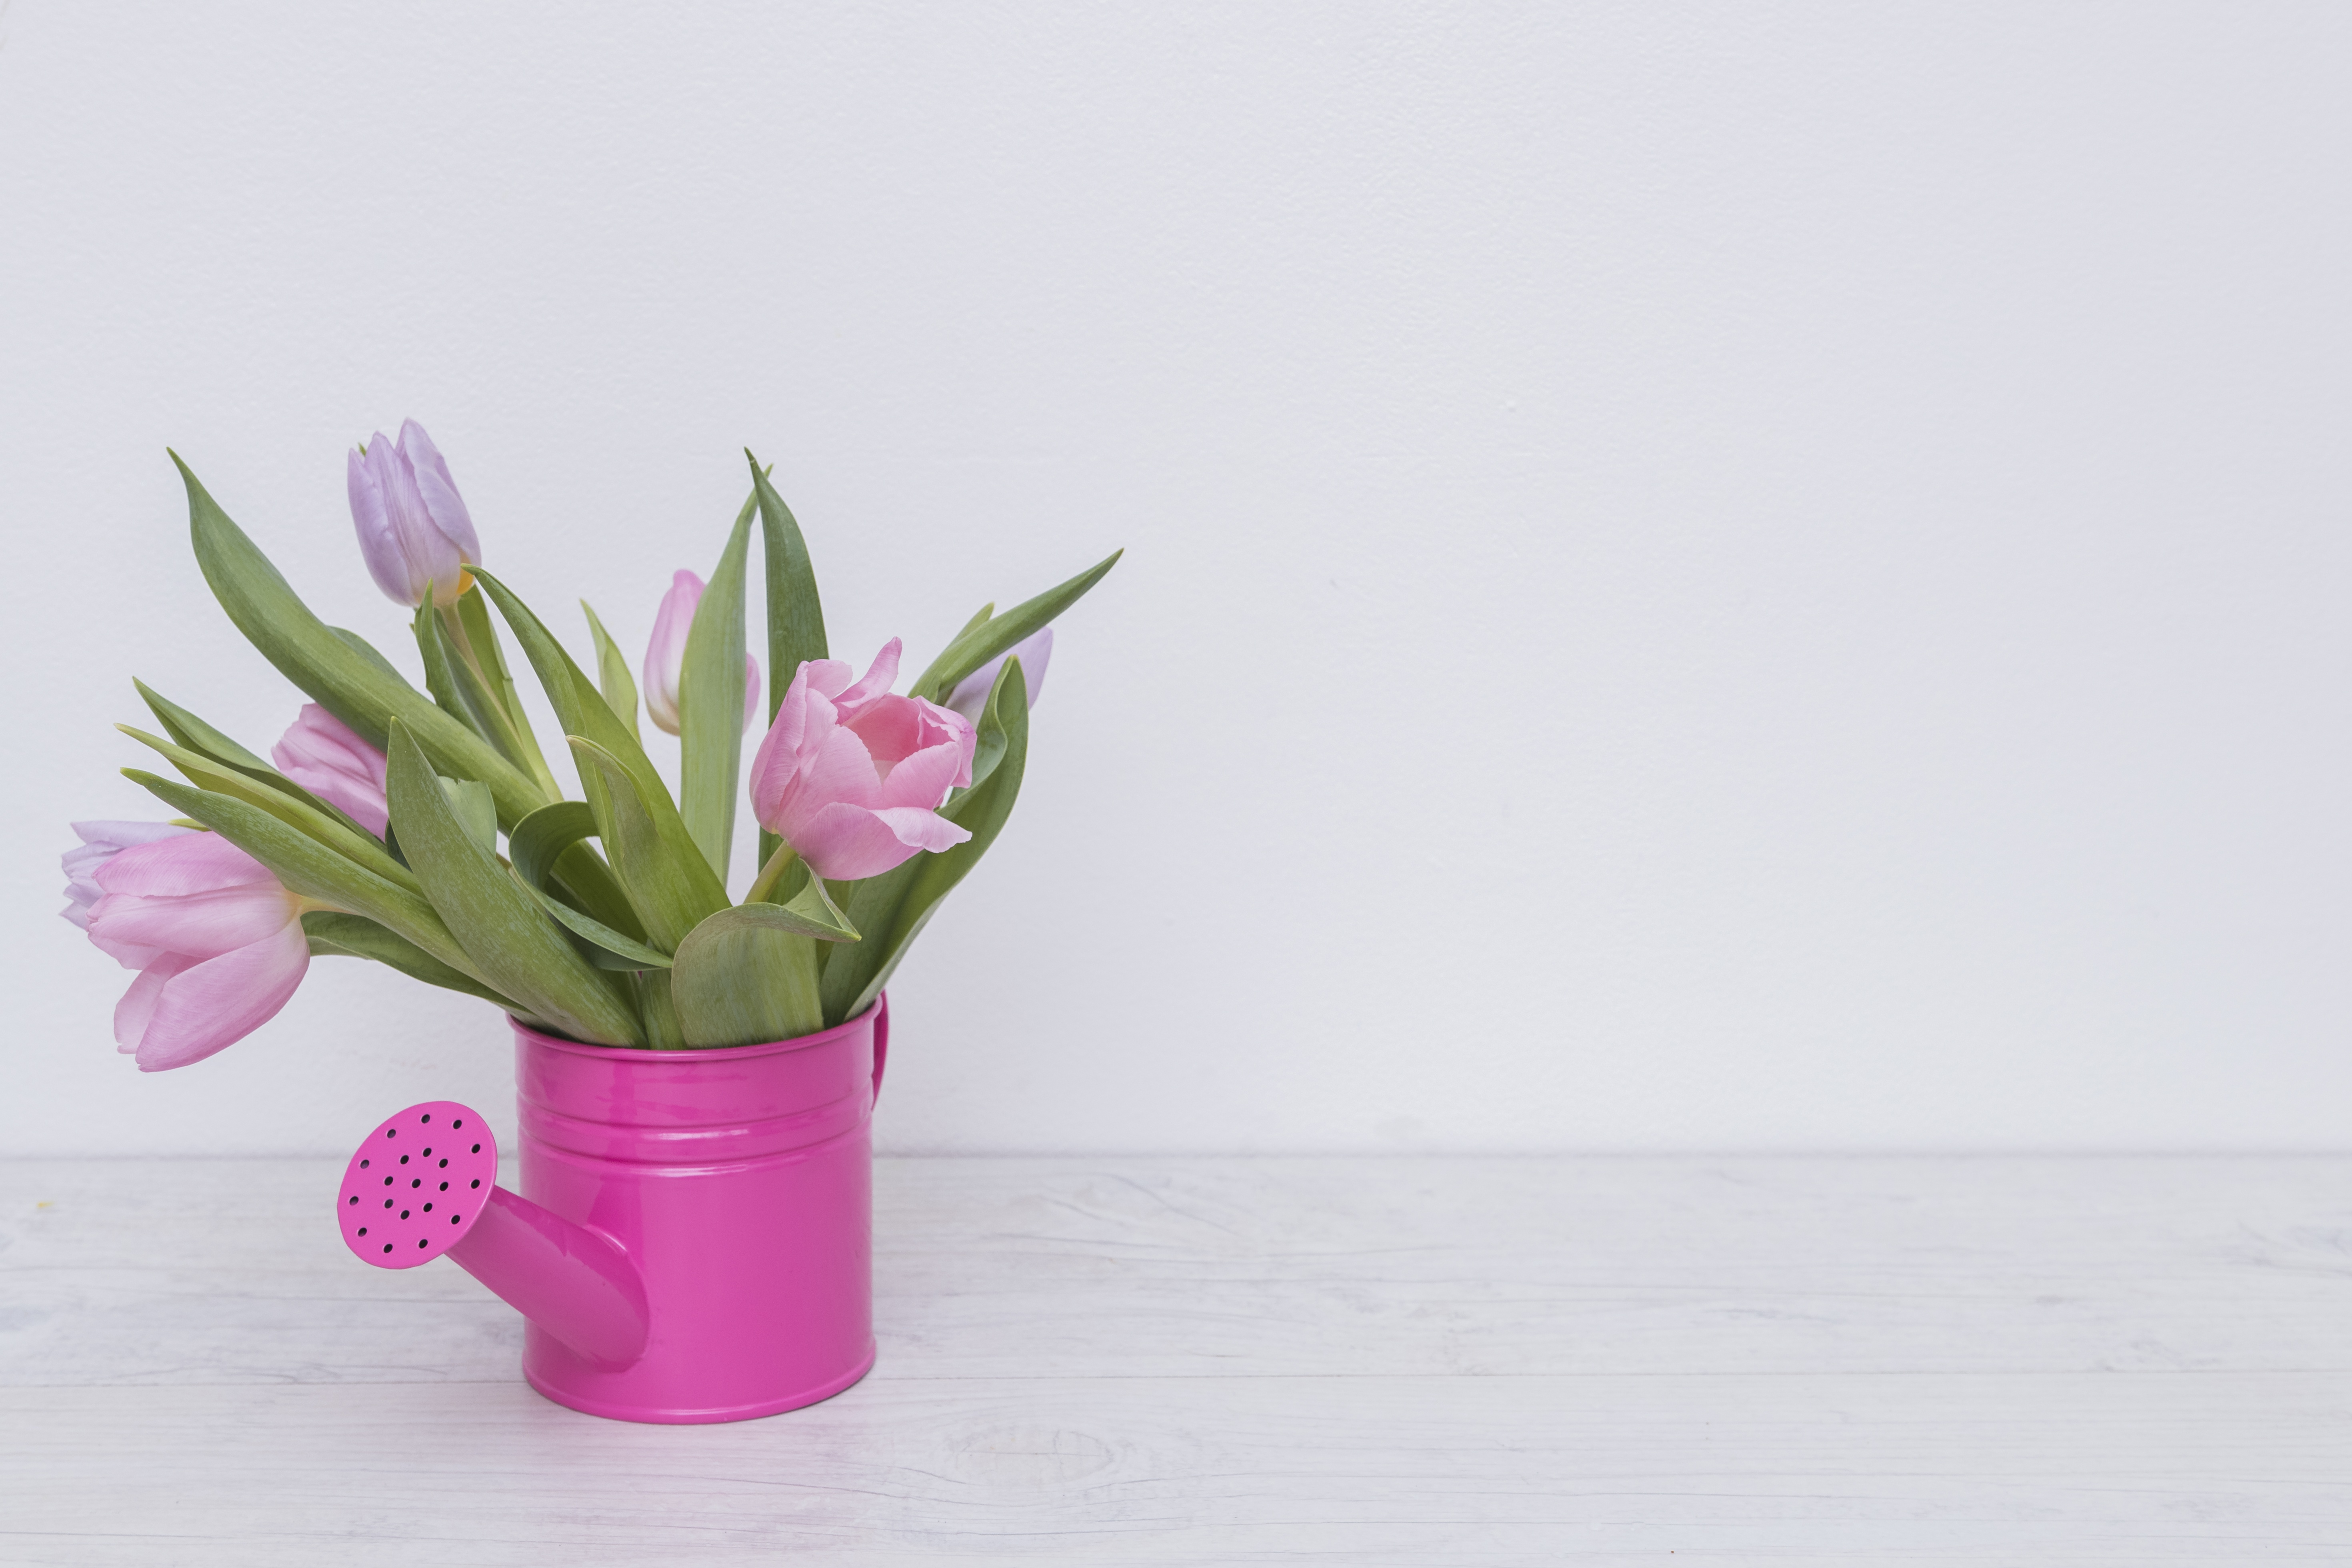 Тюльпаны минимализм. Тюльпаны в вазе. Розовые тюльпаны в вазе. Цветок в горшке Минимализм. Тюльпаны розовые нежные в вазе.